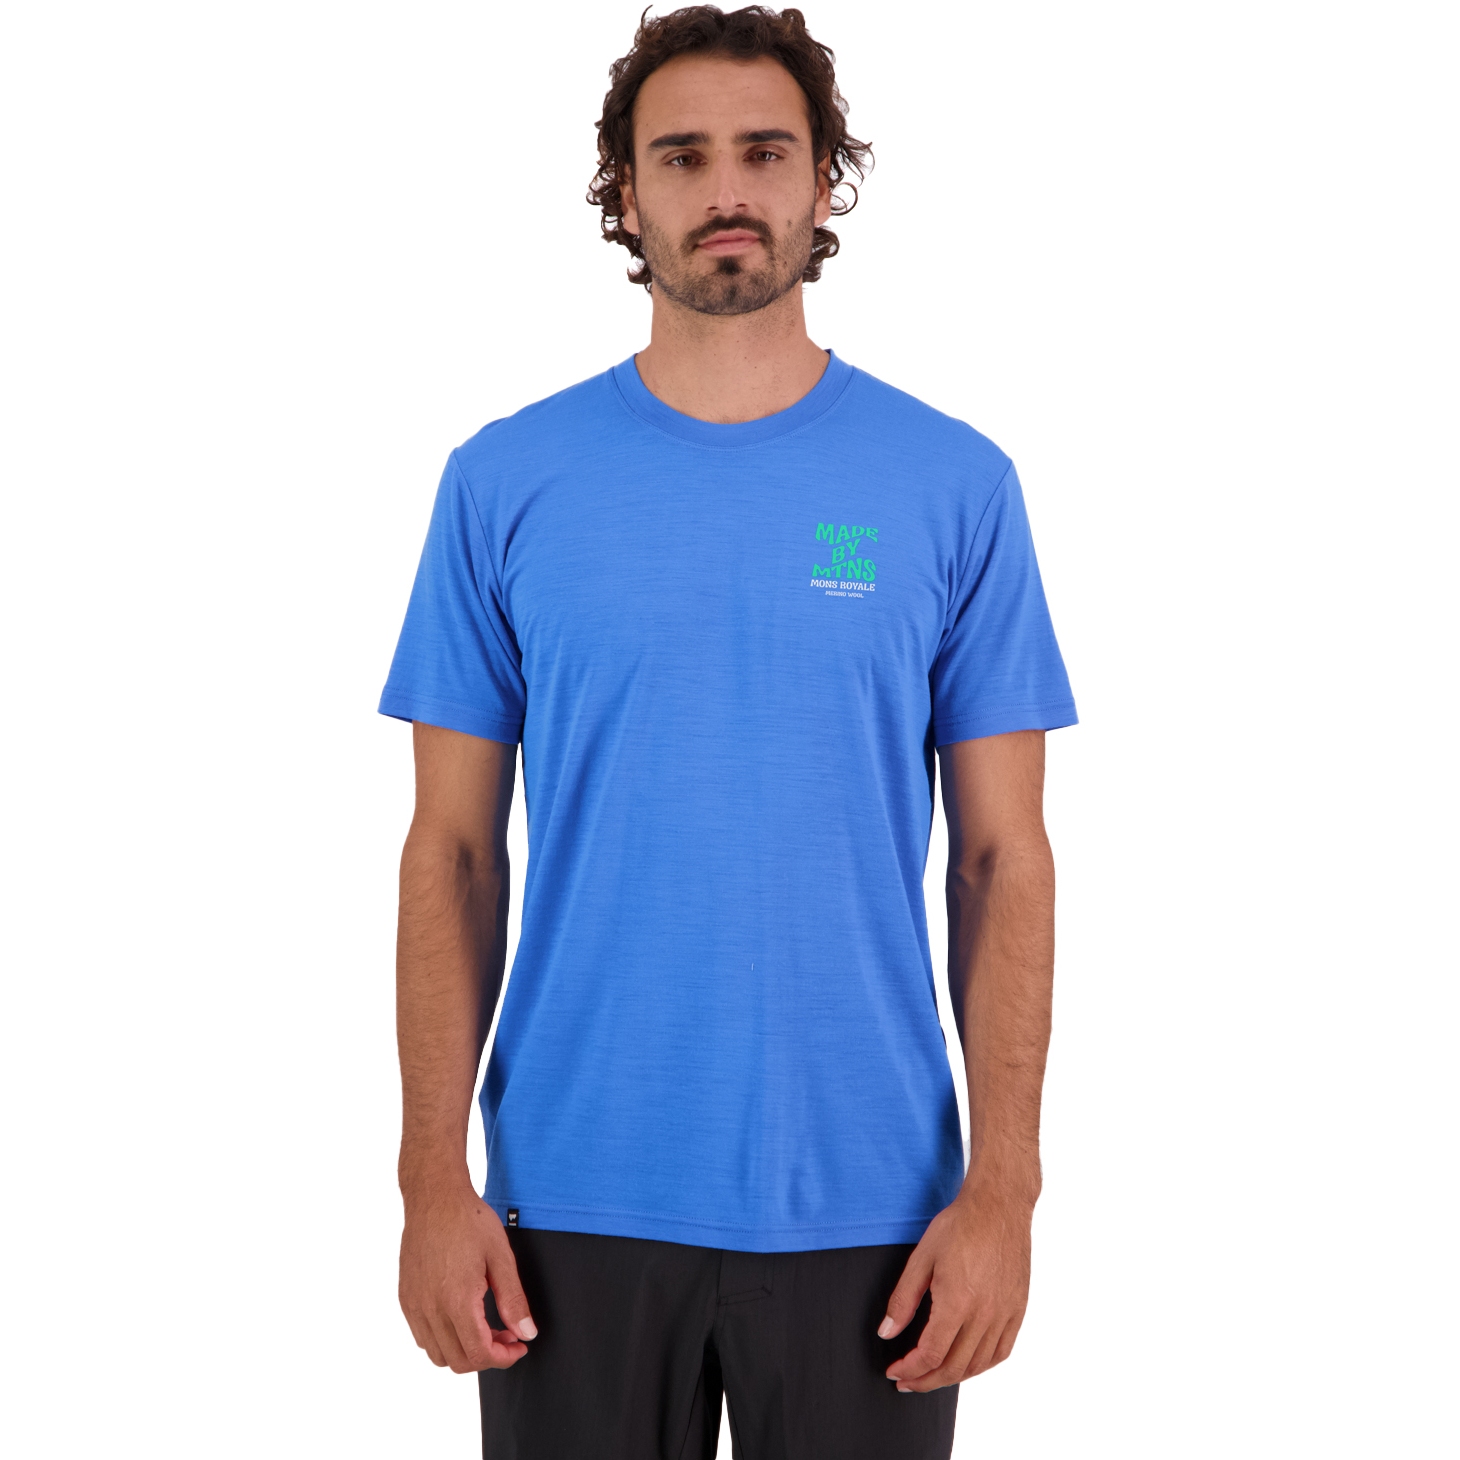 Produktbild von Mons Royale Icon Merino Air-Con T-Shirt Herren - pop blue 1233